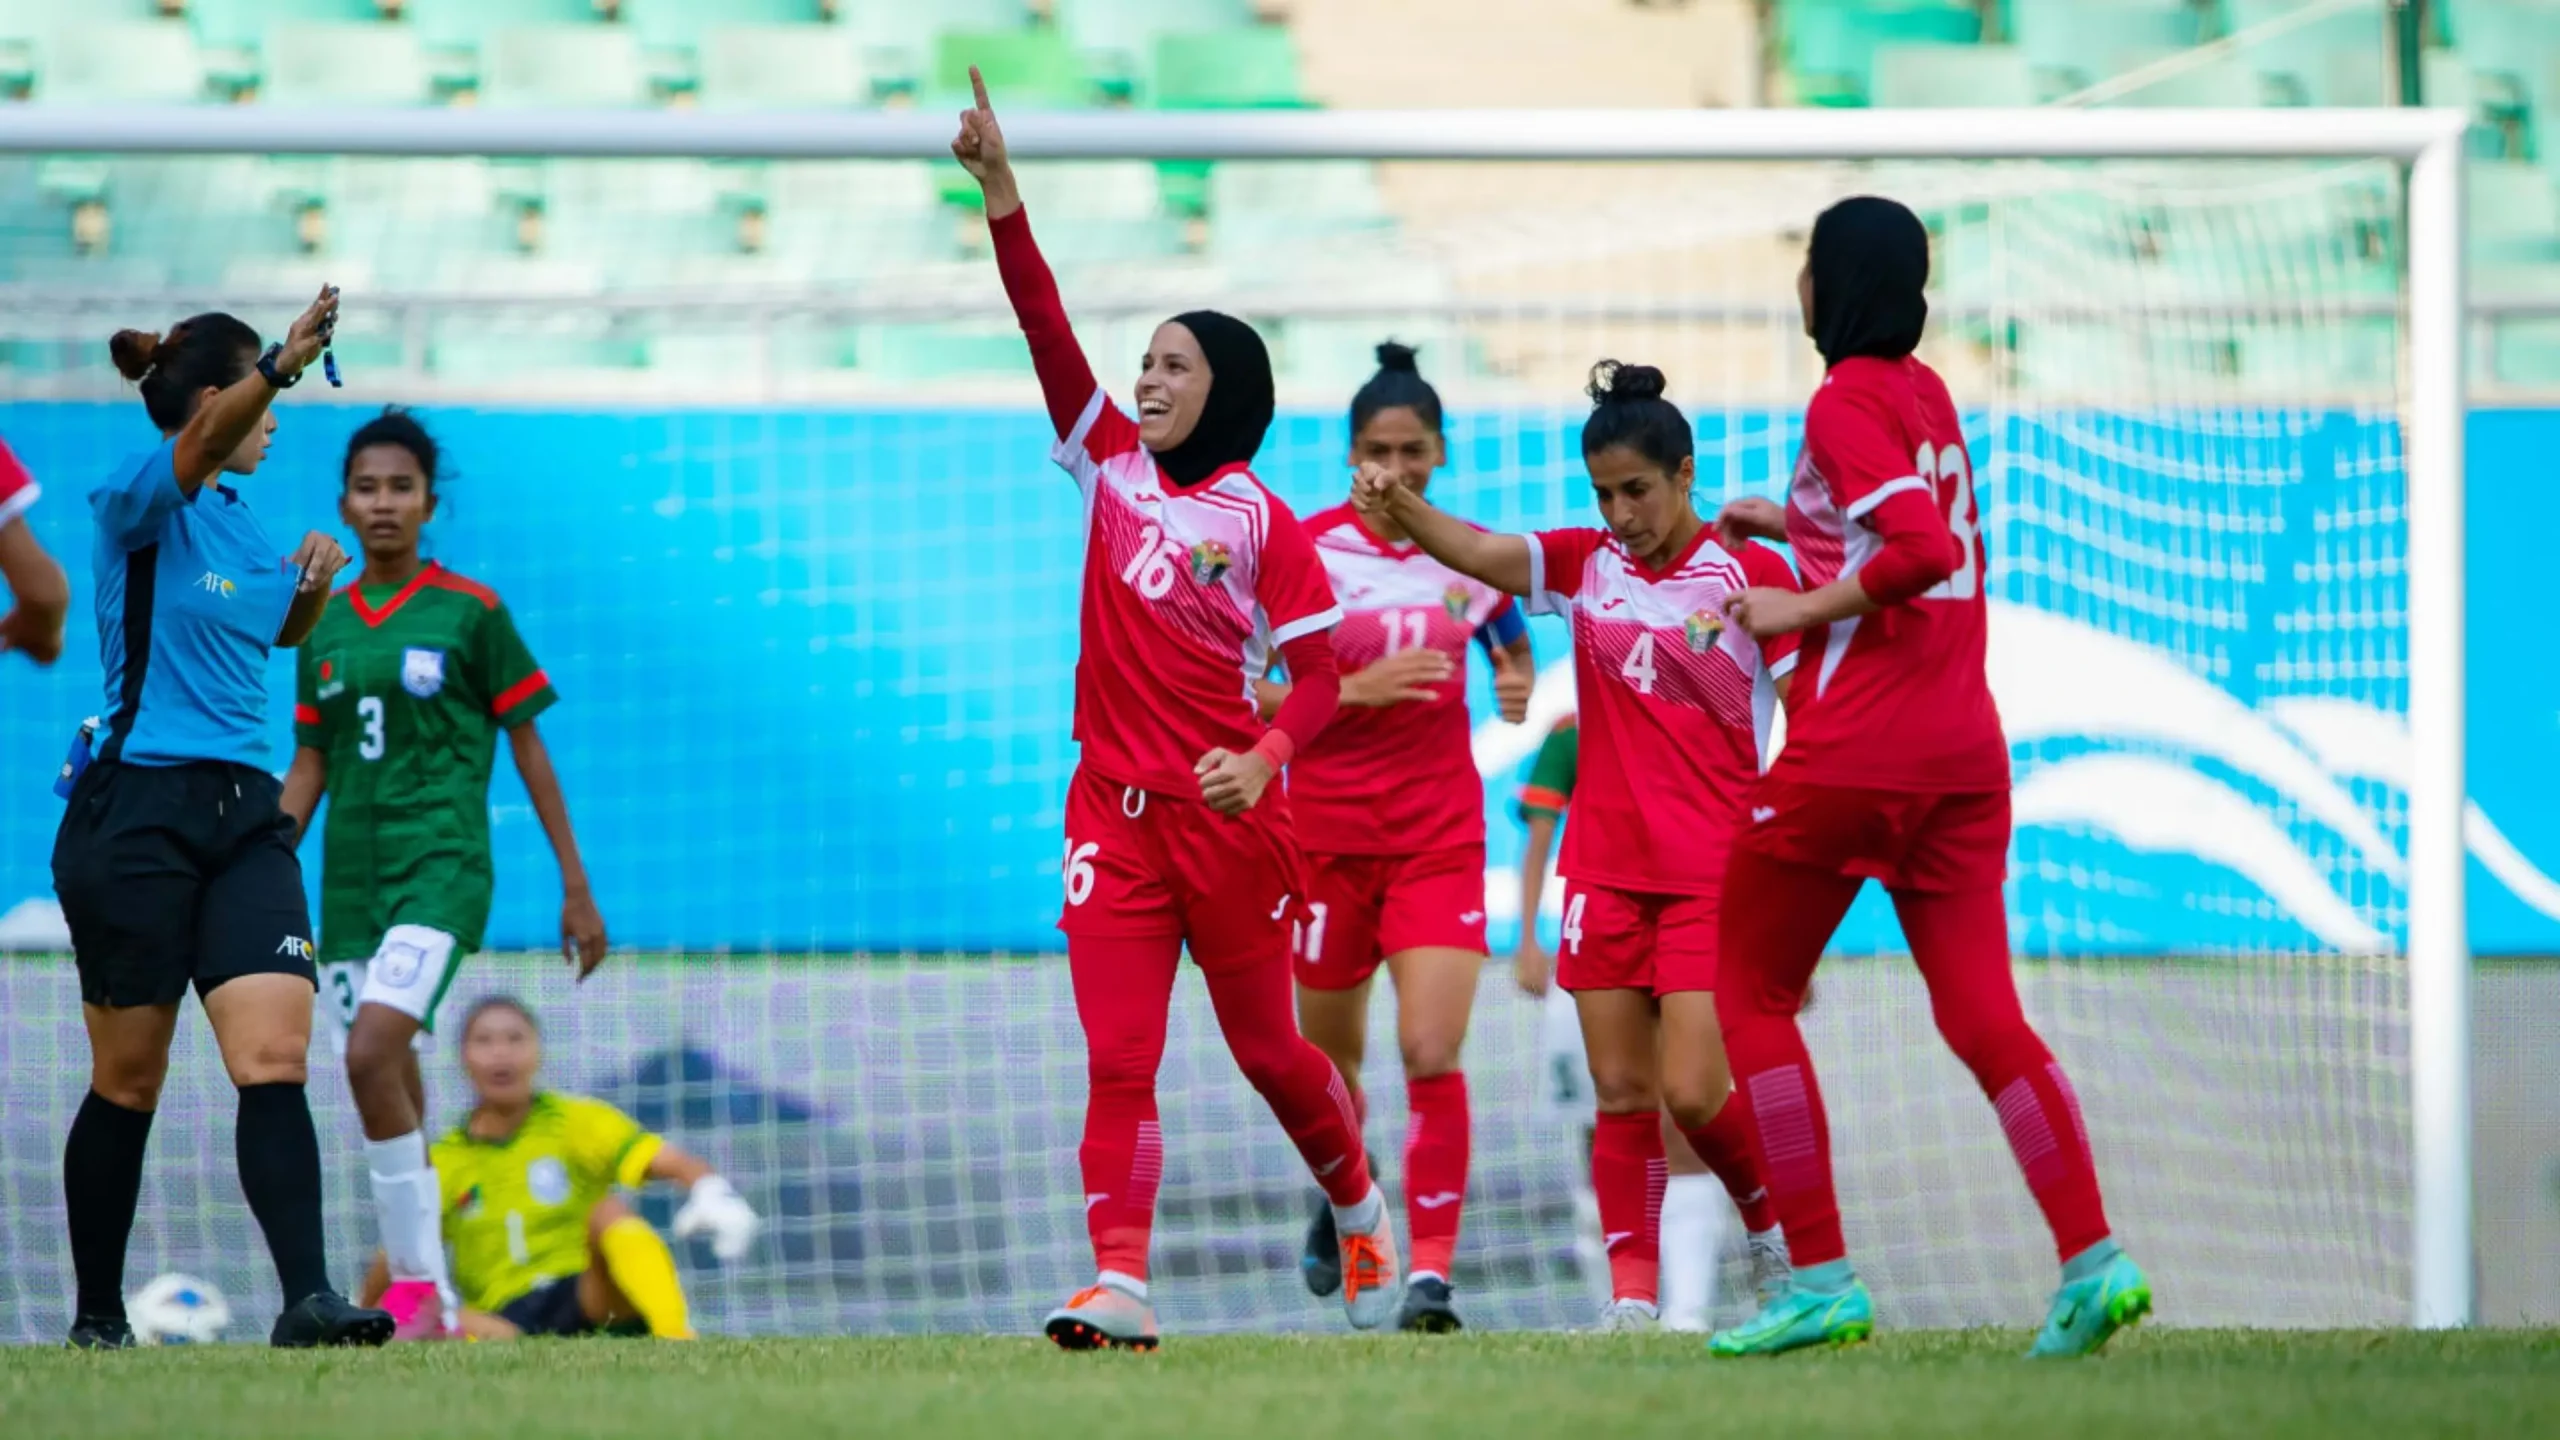 المنتخب الأردني النسوي لكرة القدم يلغي مشاركته في بطولة تركيا الدولية